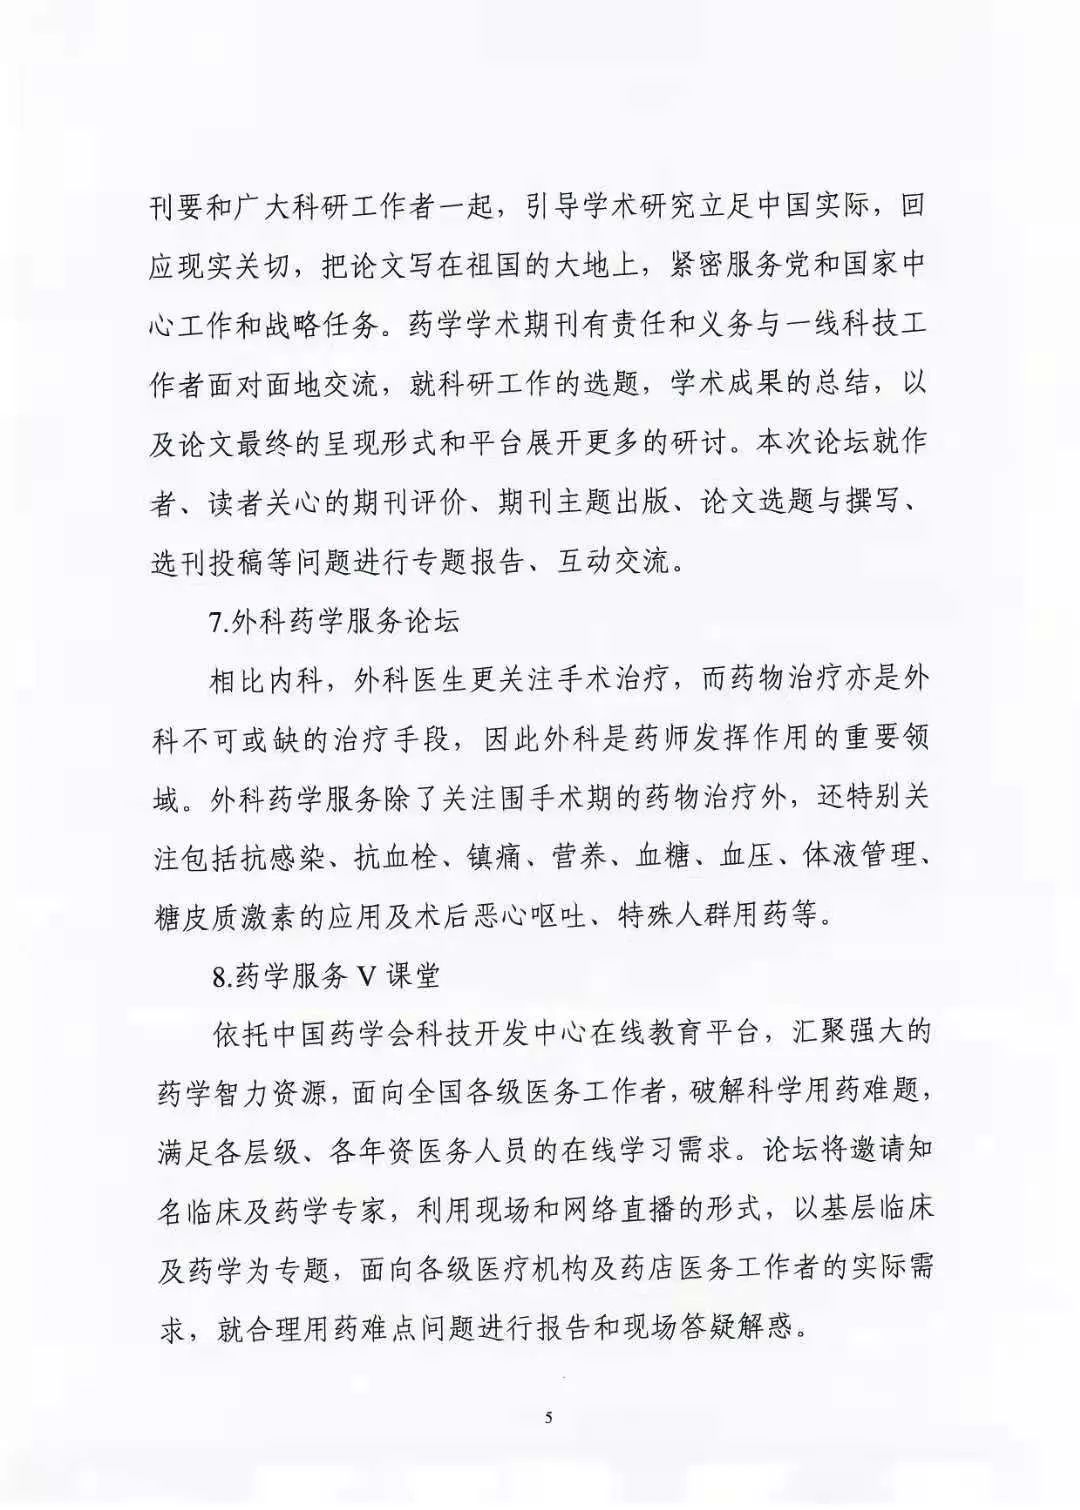 关于举办中国药学会第二十一届中国药师周的通知（第一轮）(图5)